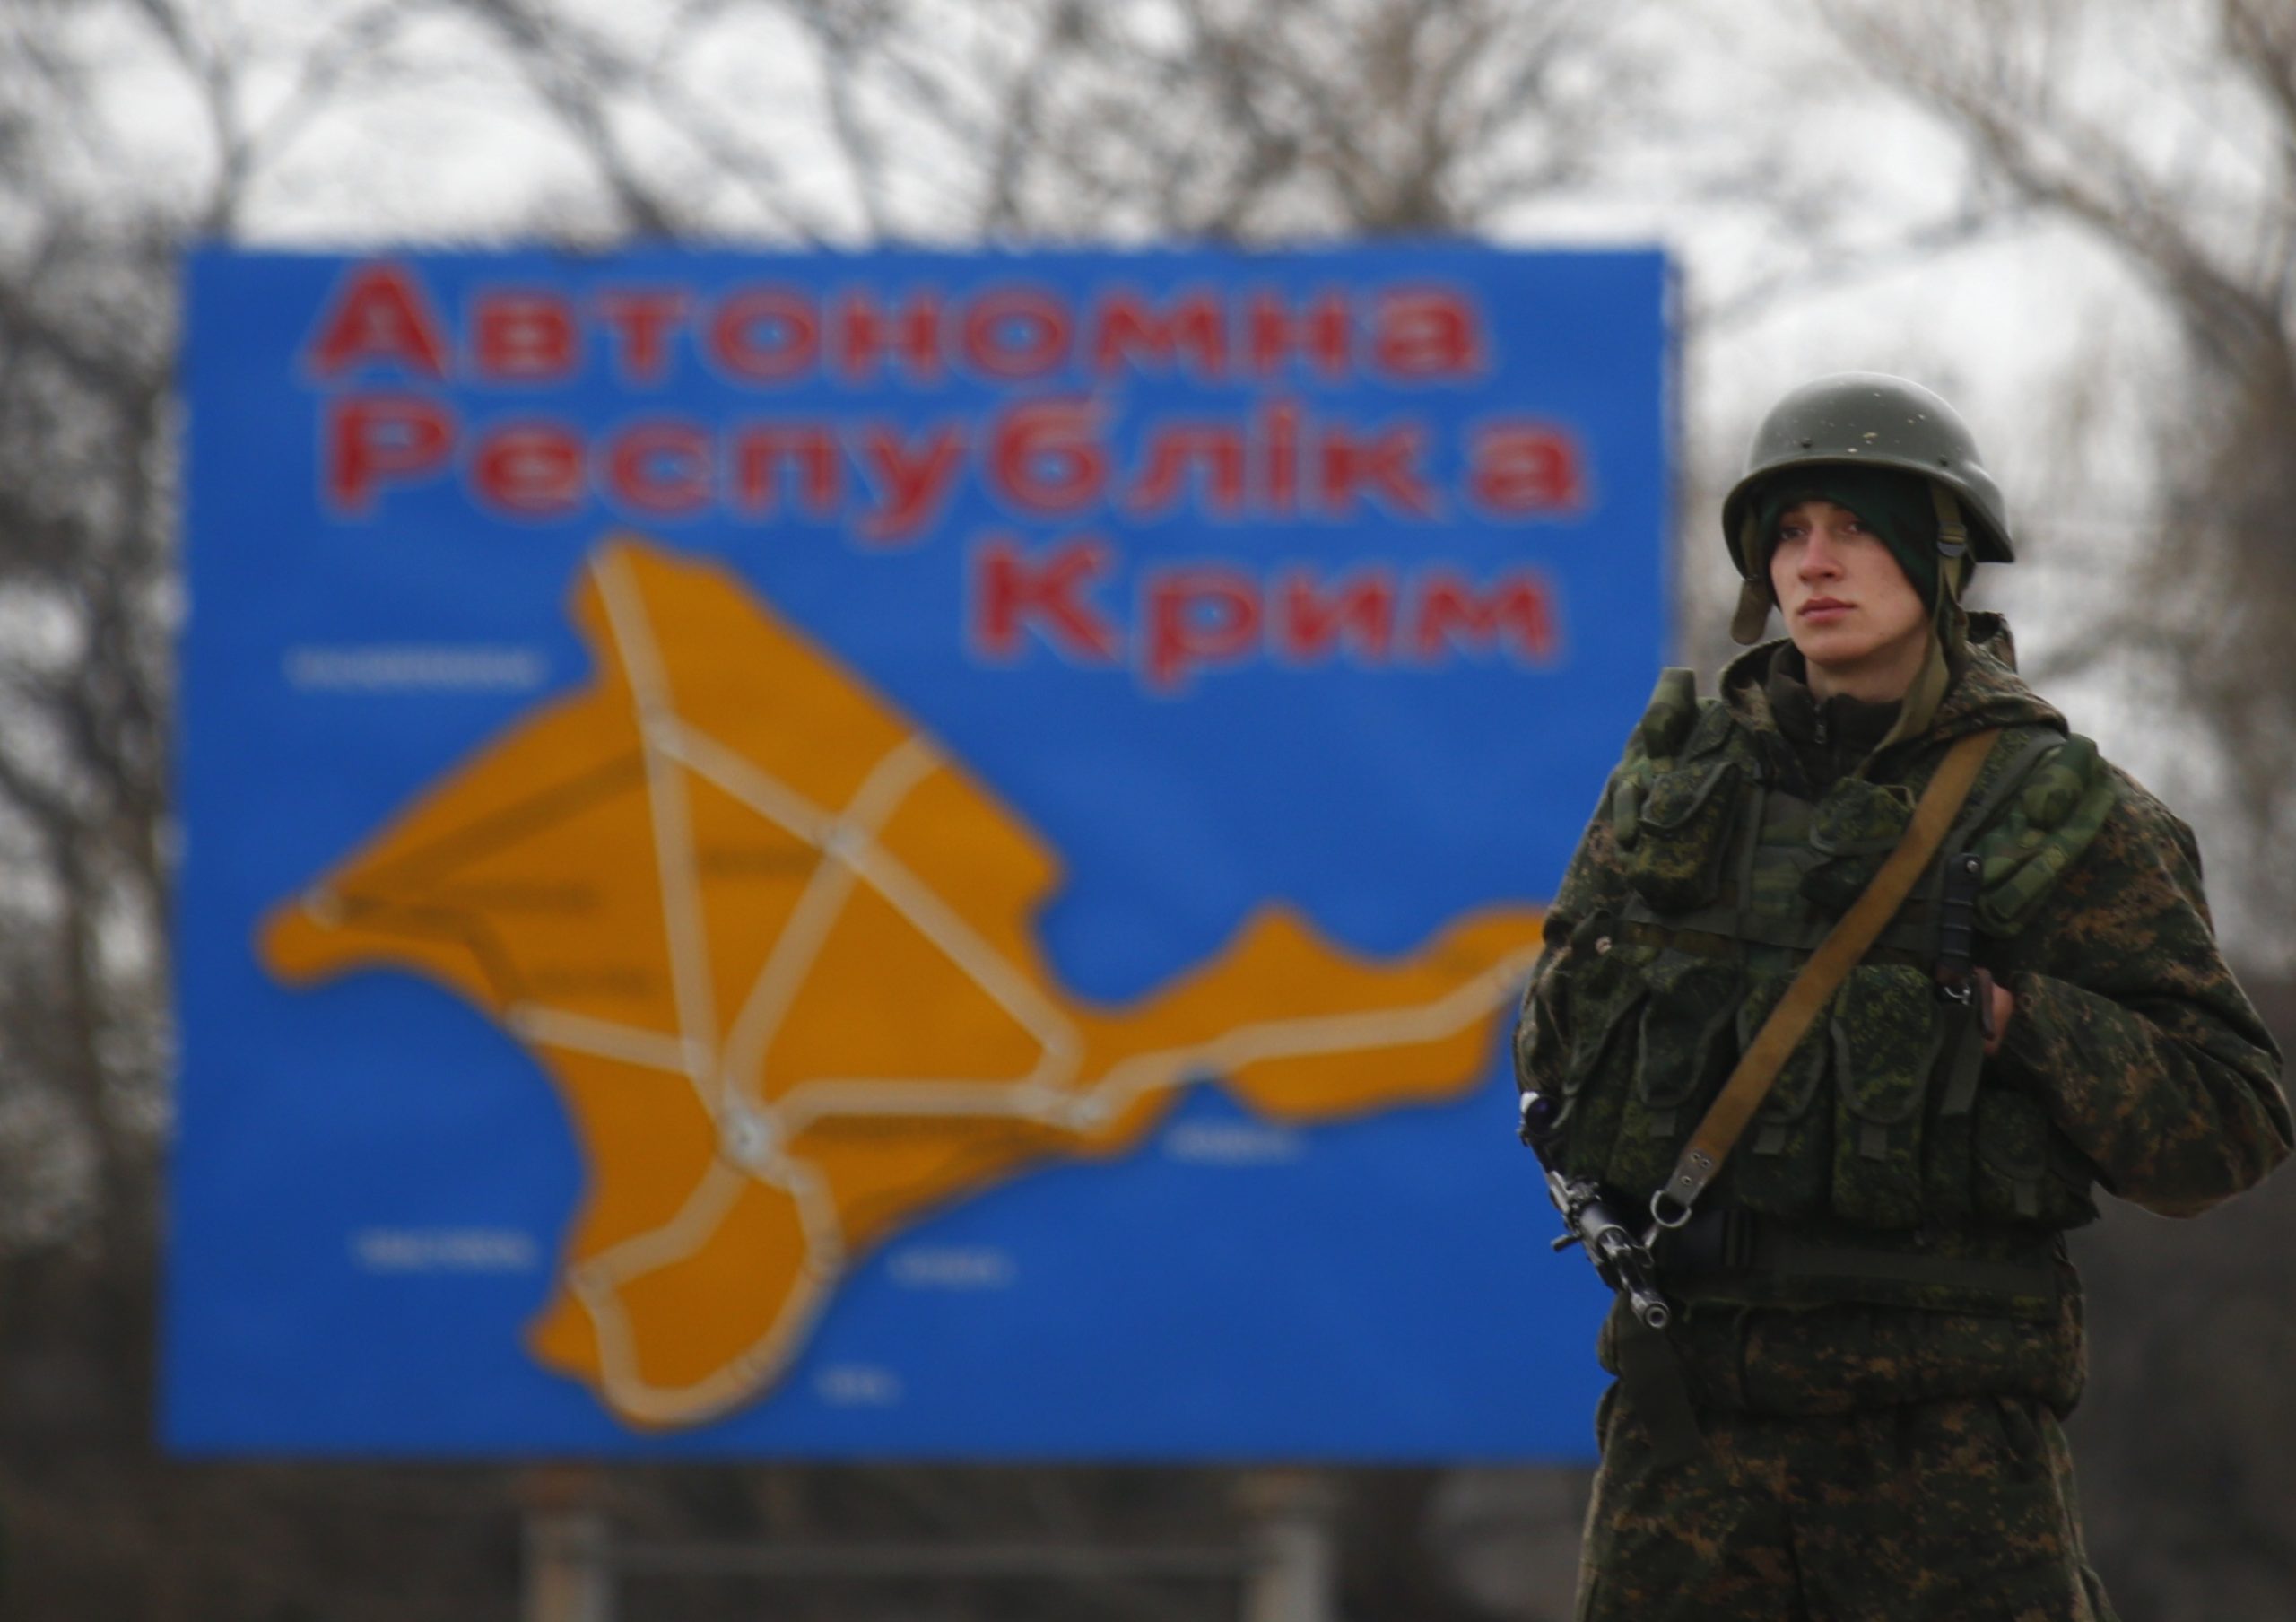 Ε.Ε.: Ανανέωση των κυρώσεων σε βάρος της Ρωσίας και της προσάρτησης της Κριμαίας